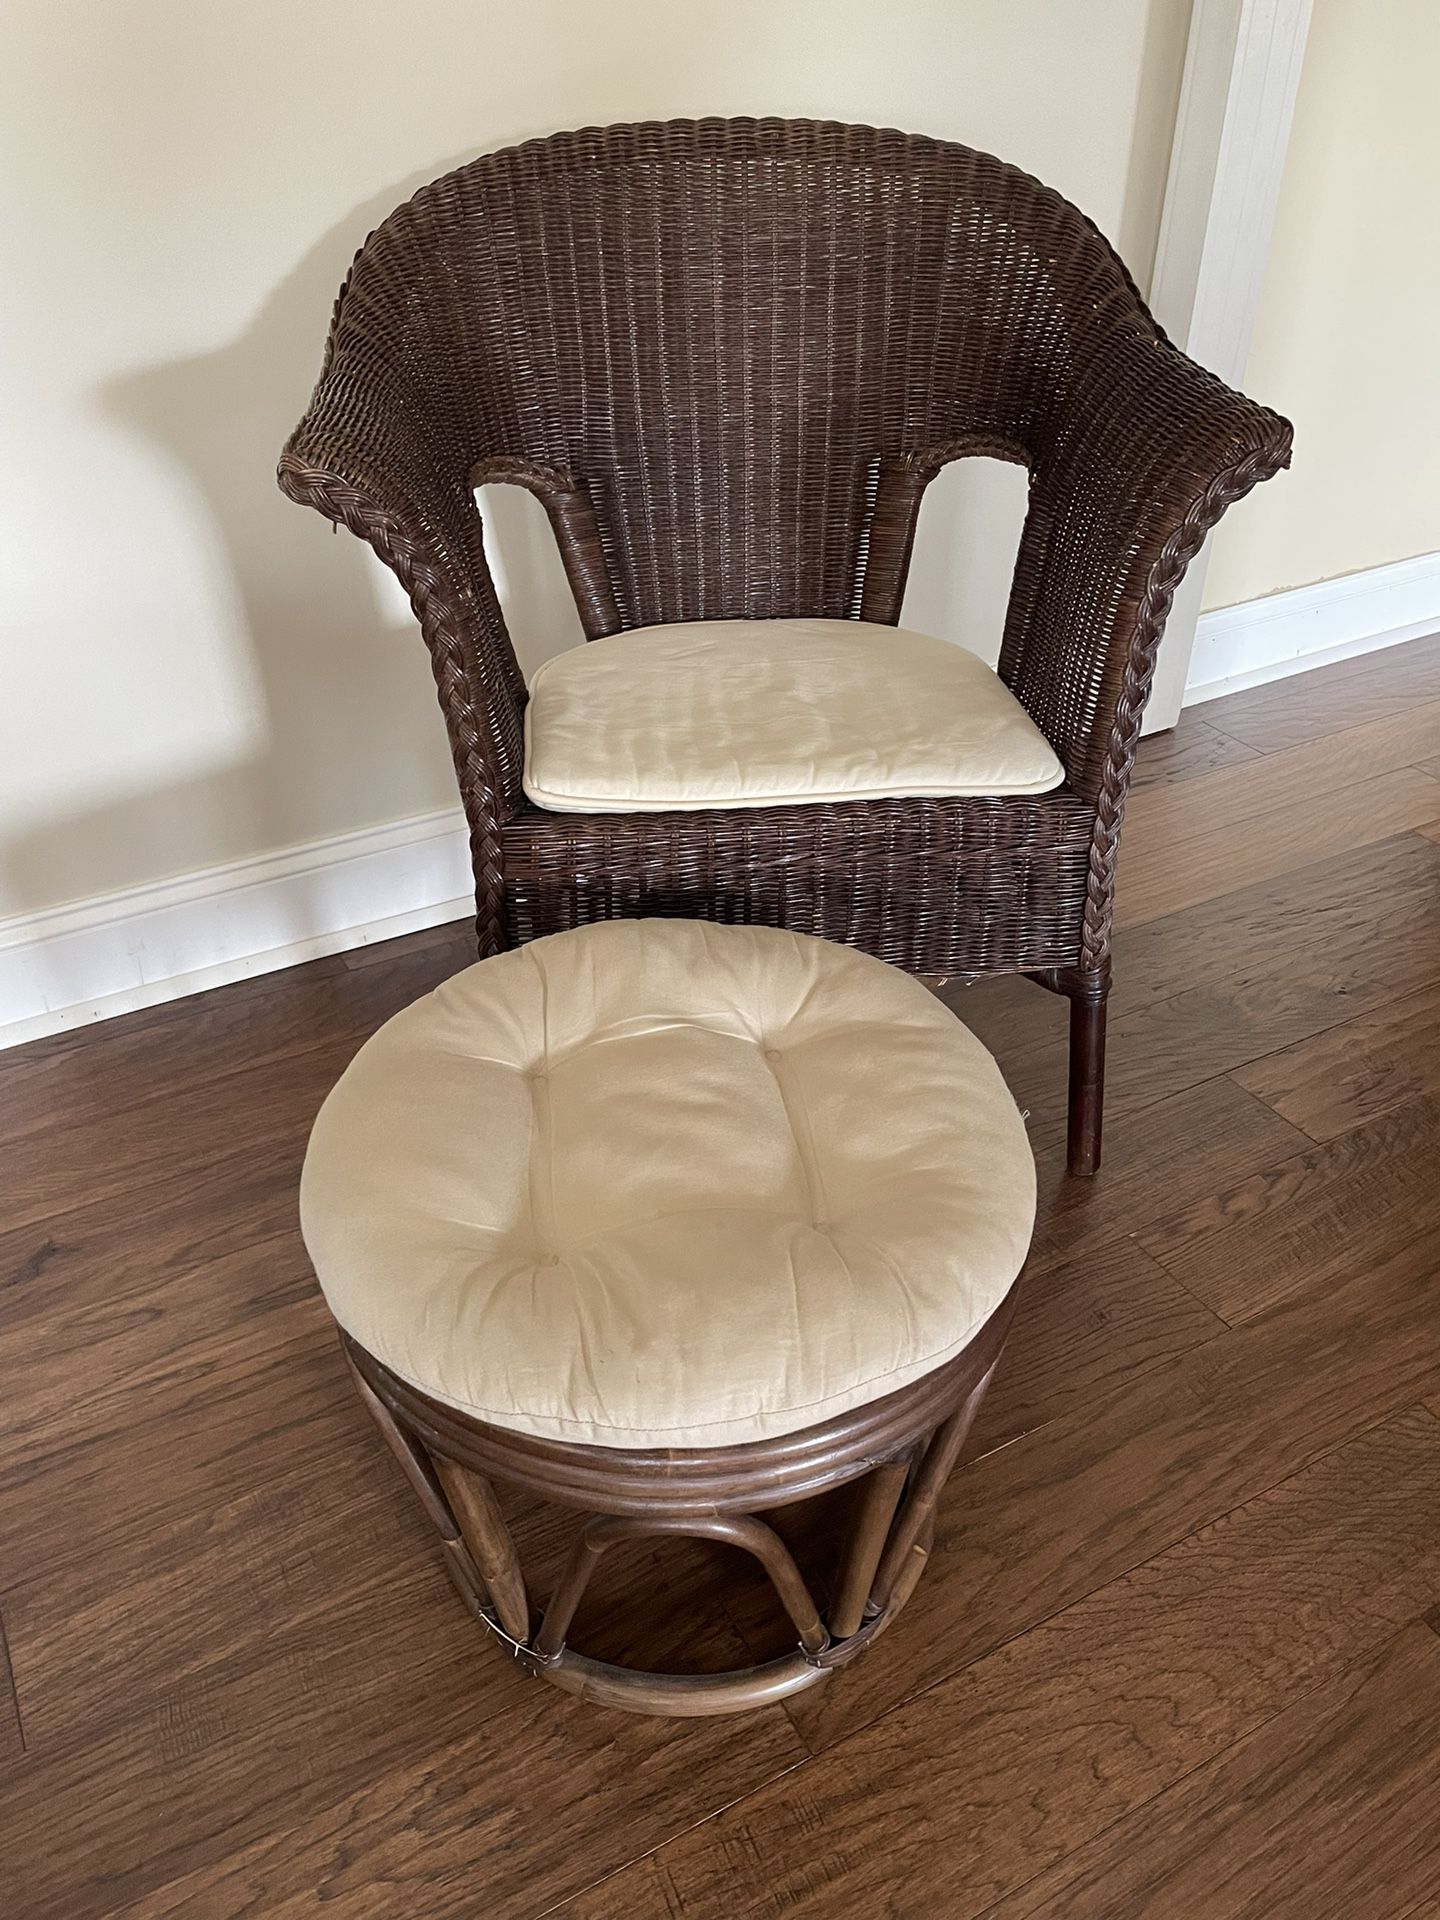 Rattan Chair And Ottoman